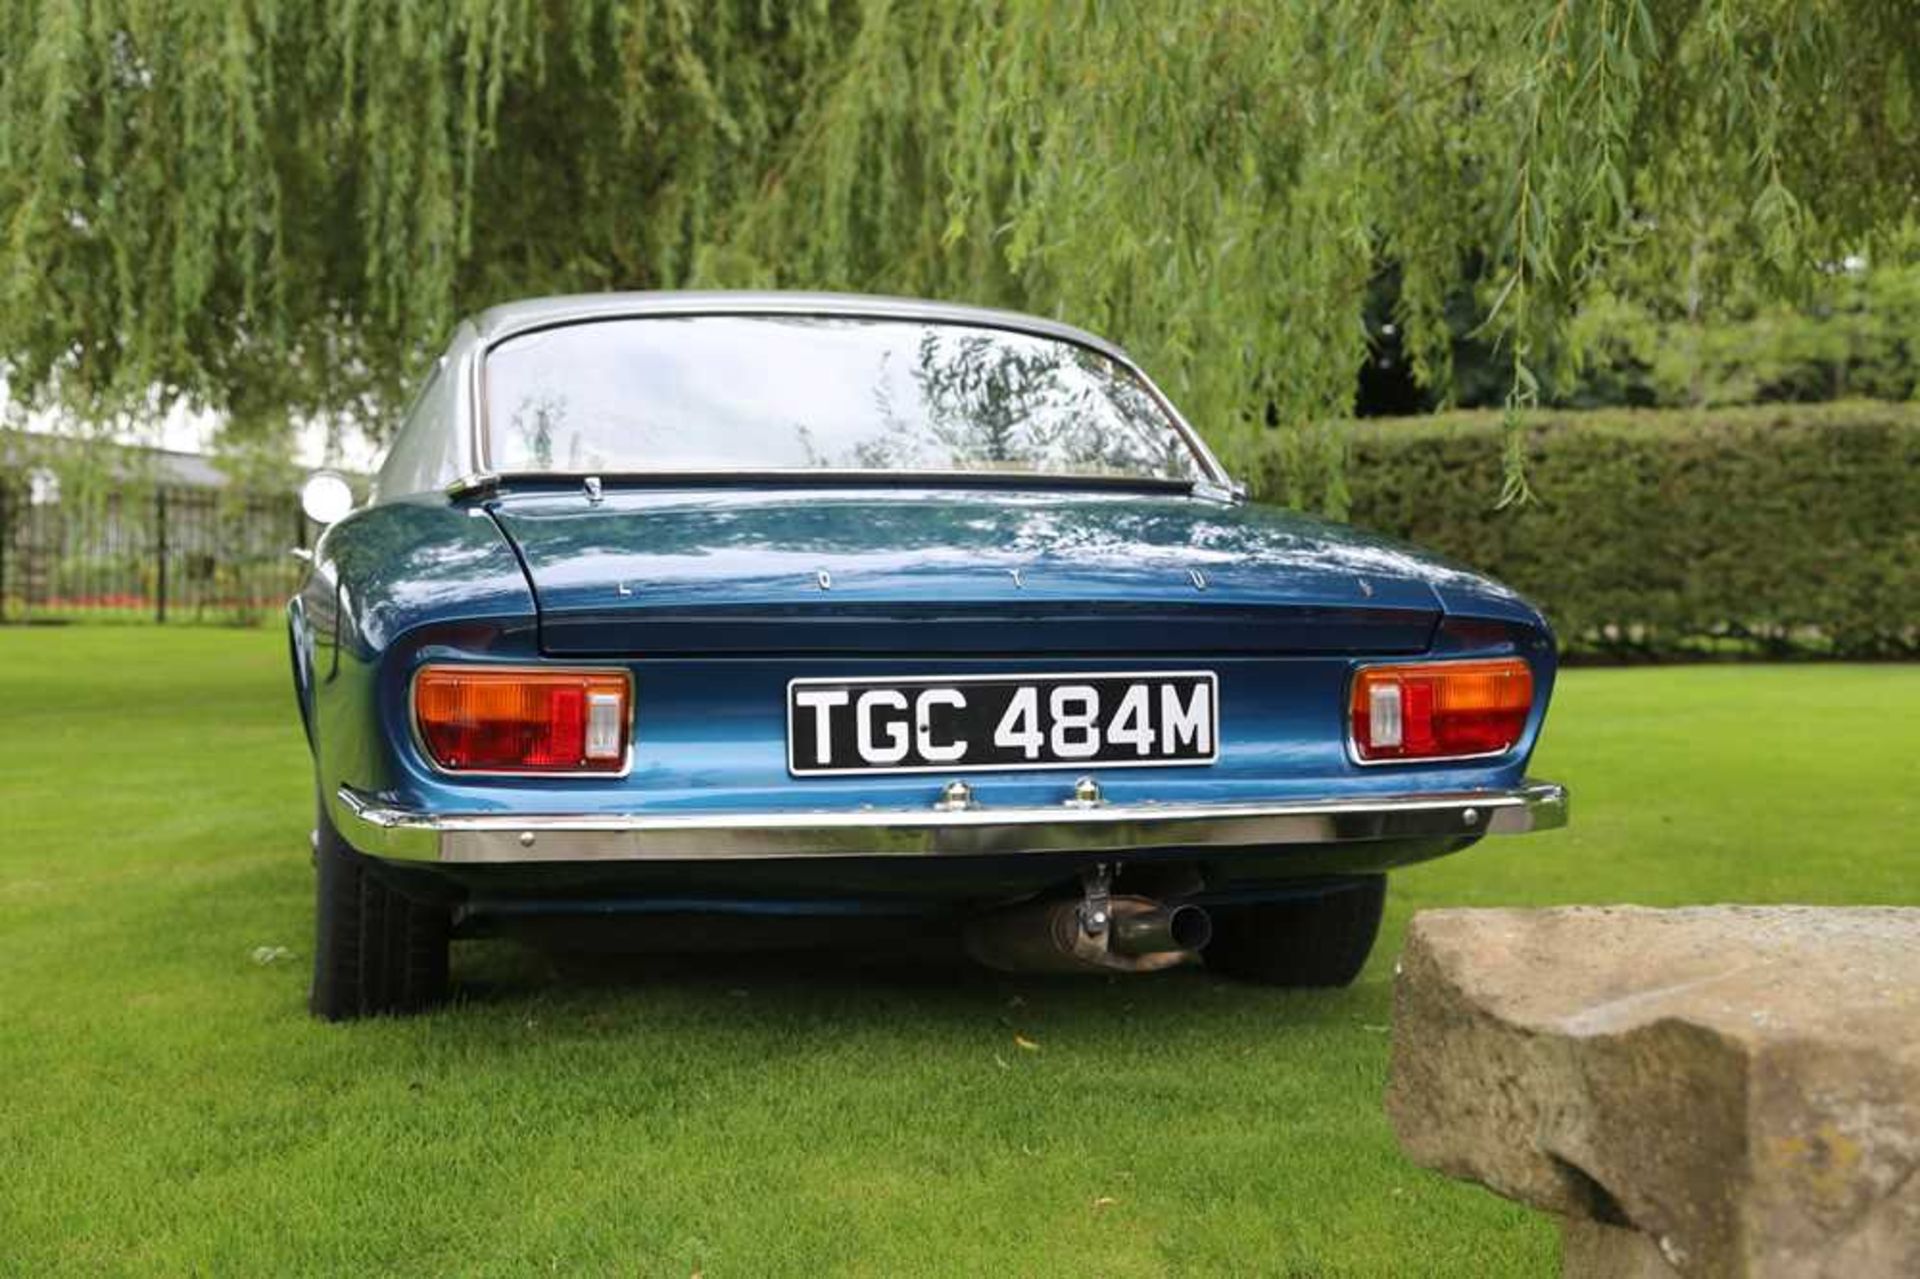 1973 Lotus Elan +2 Coupe - Image 12 of 79